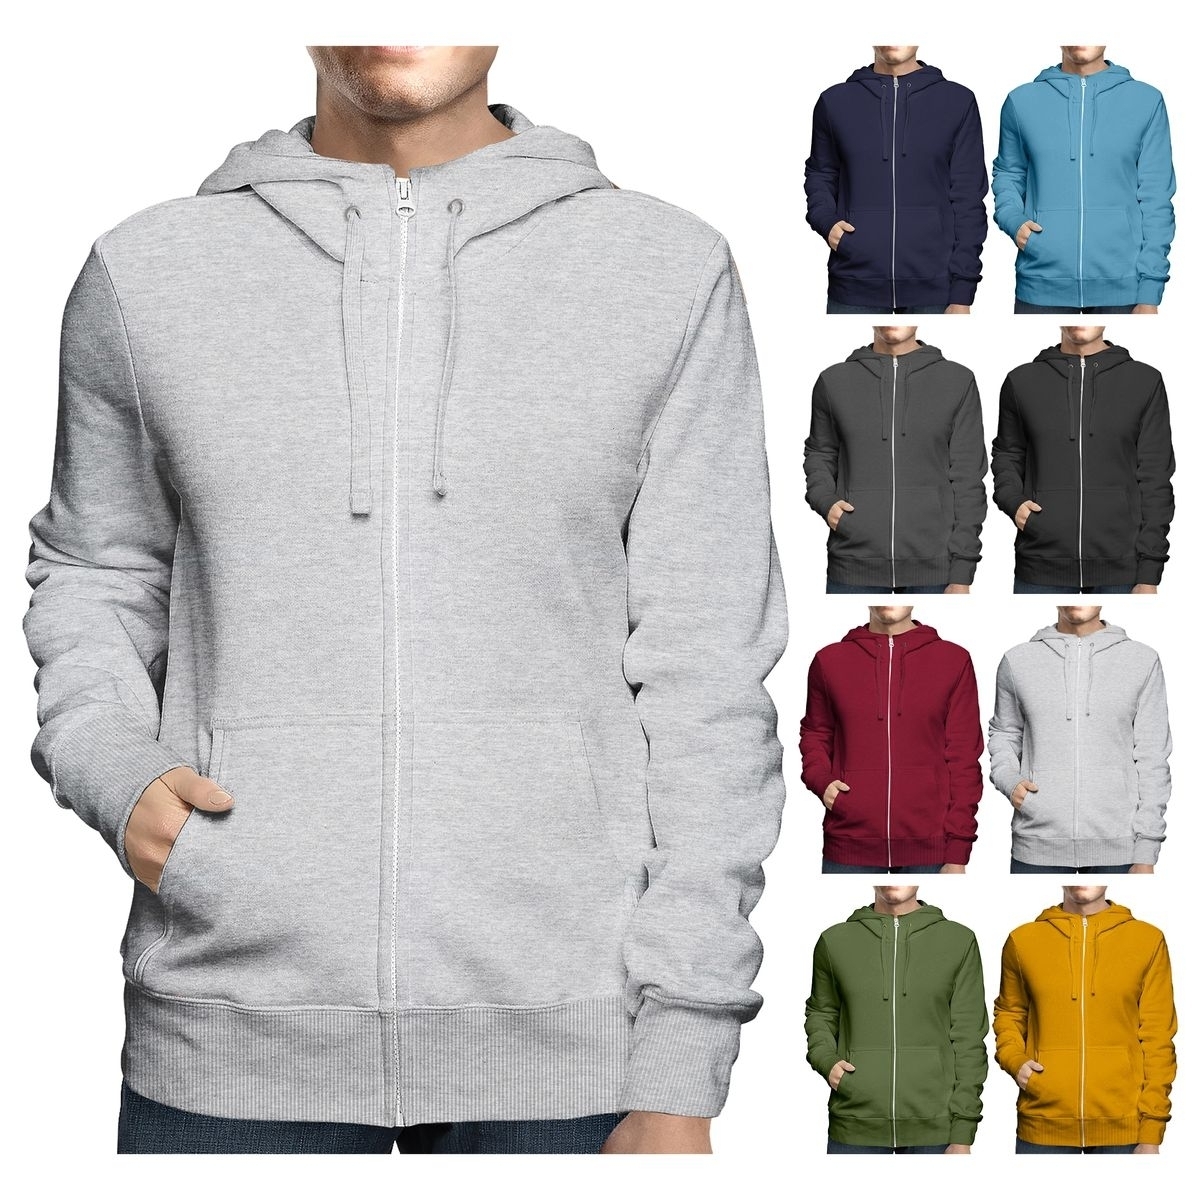 Men's Big & Tall Winter Warm Soft Cozy Full Zip-Up Fleece Lined Hoodie Sweatshirt - Navy, XX-Large